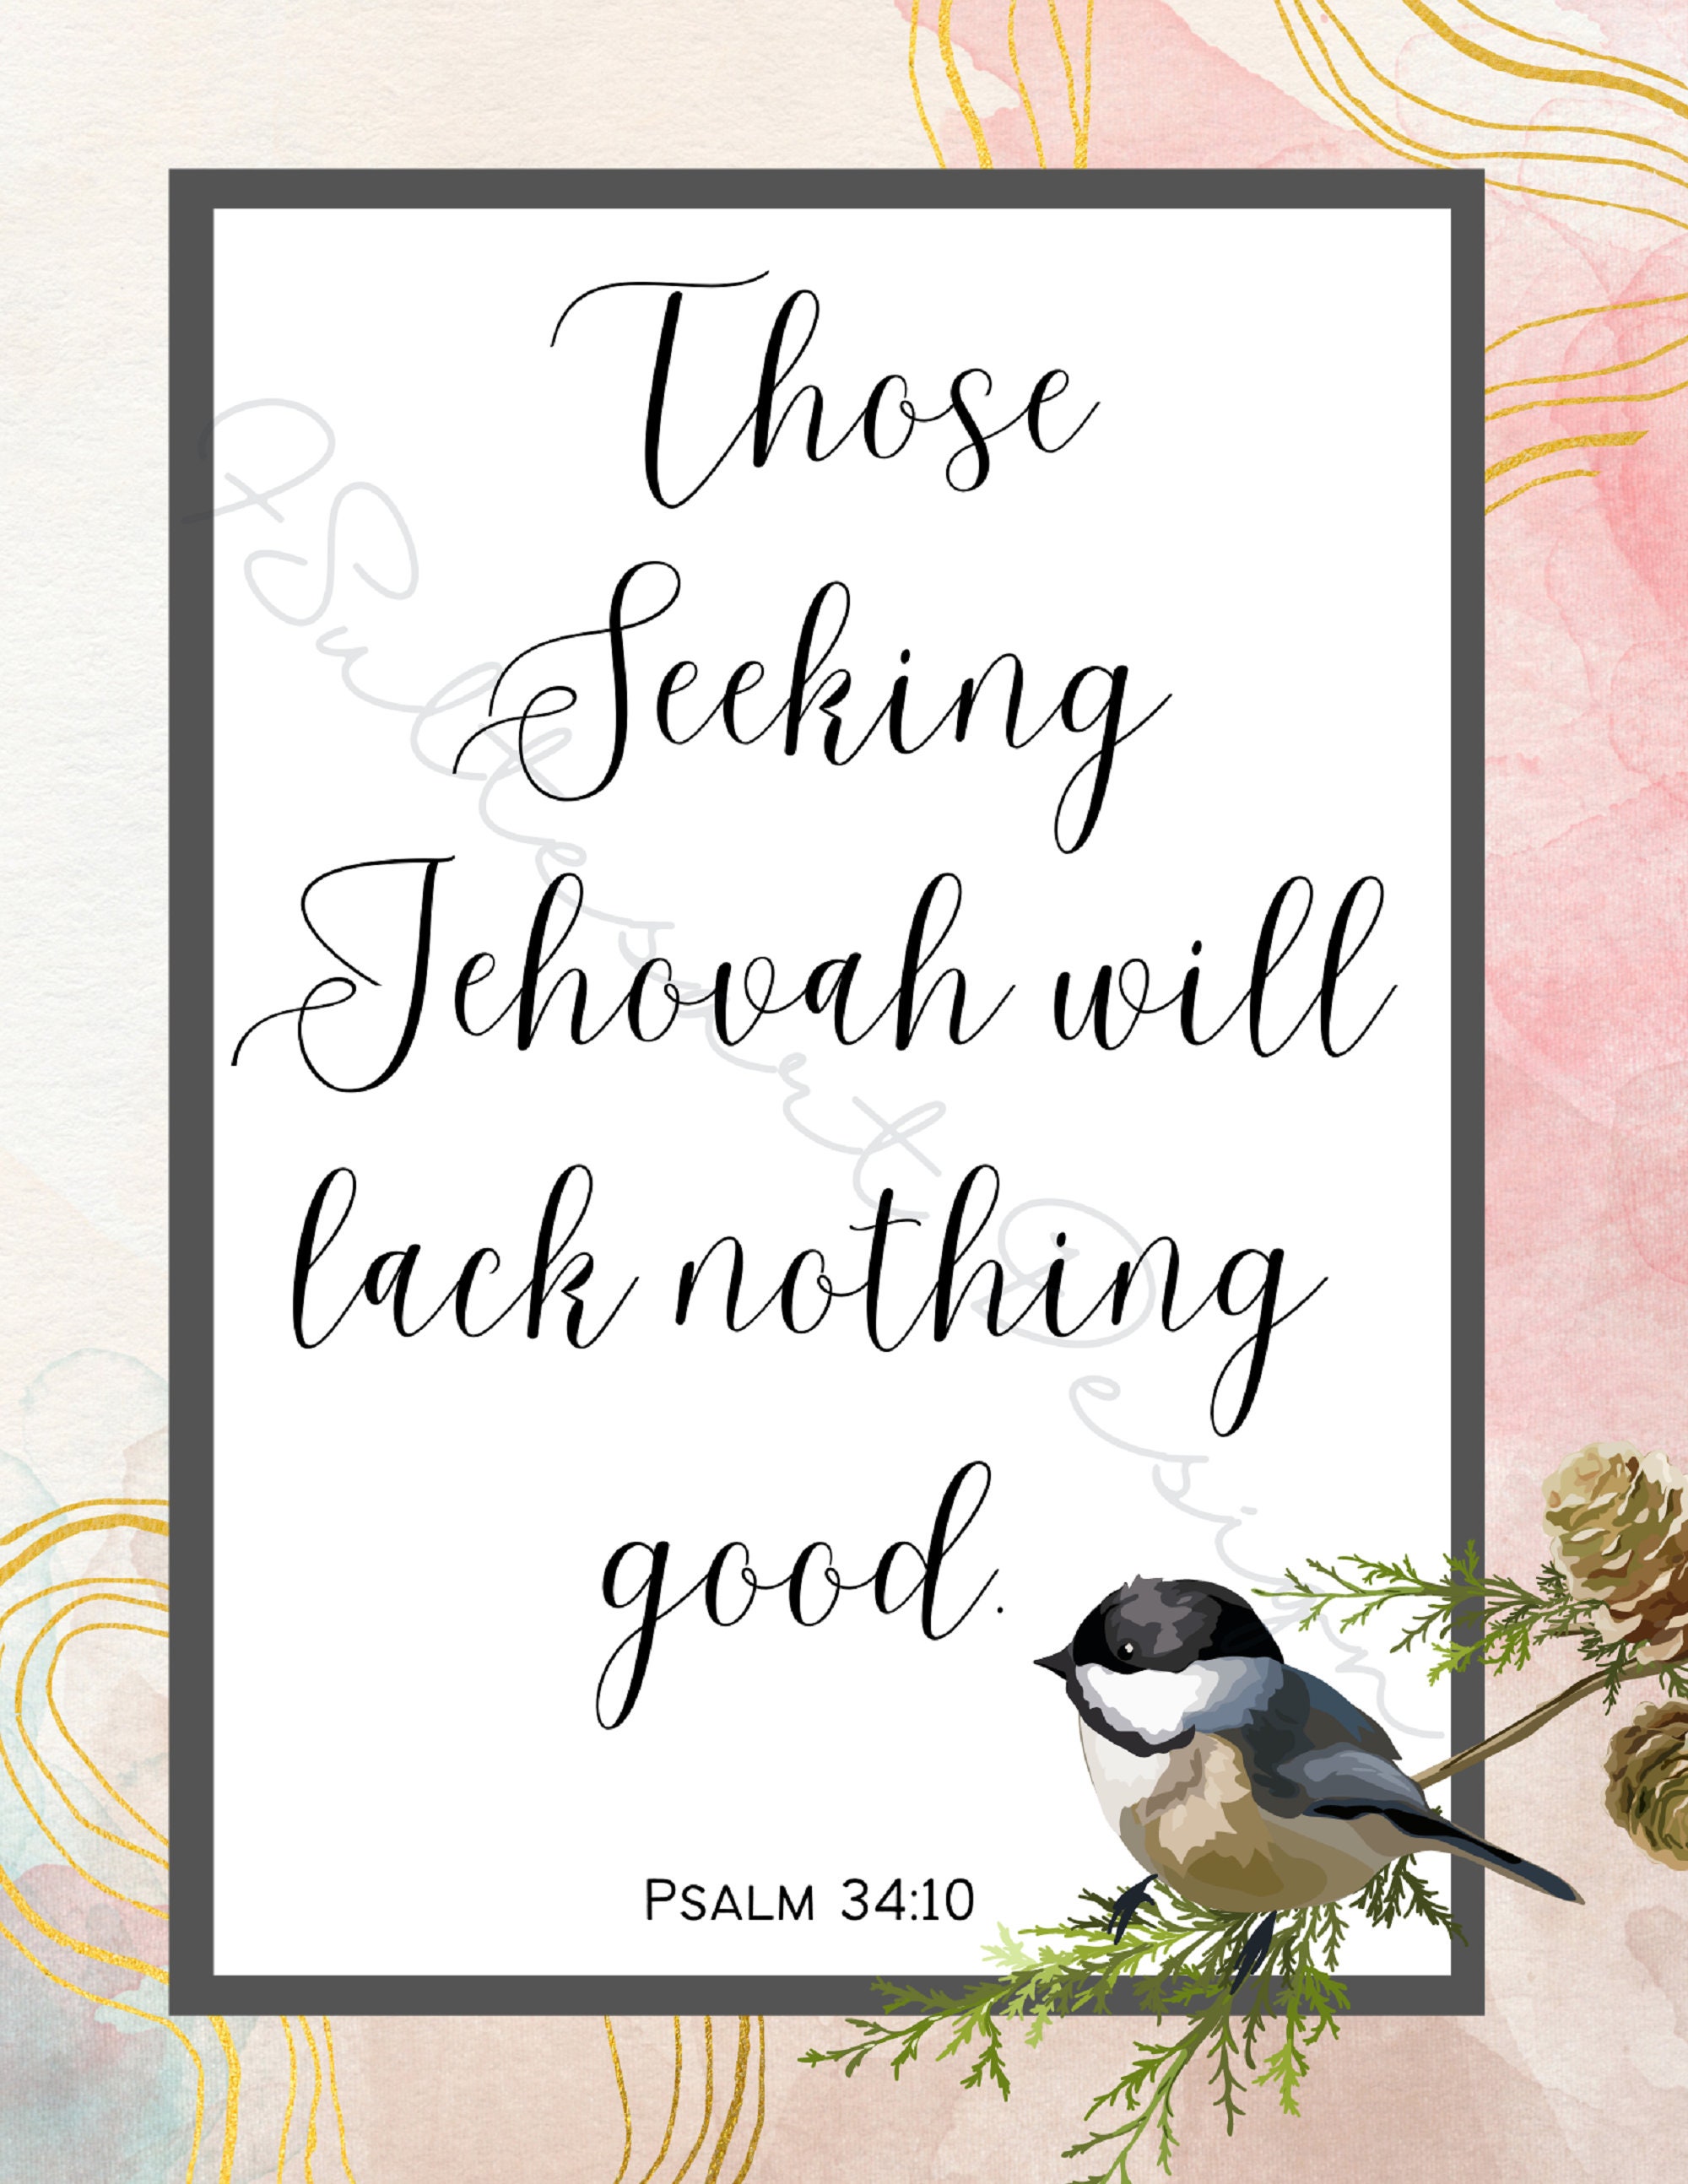 A los que buscan a Jehová no les faltará nada bueno Salmo 34:10